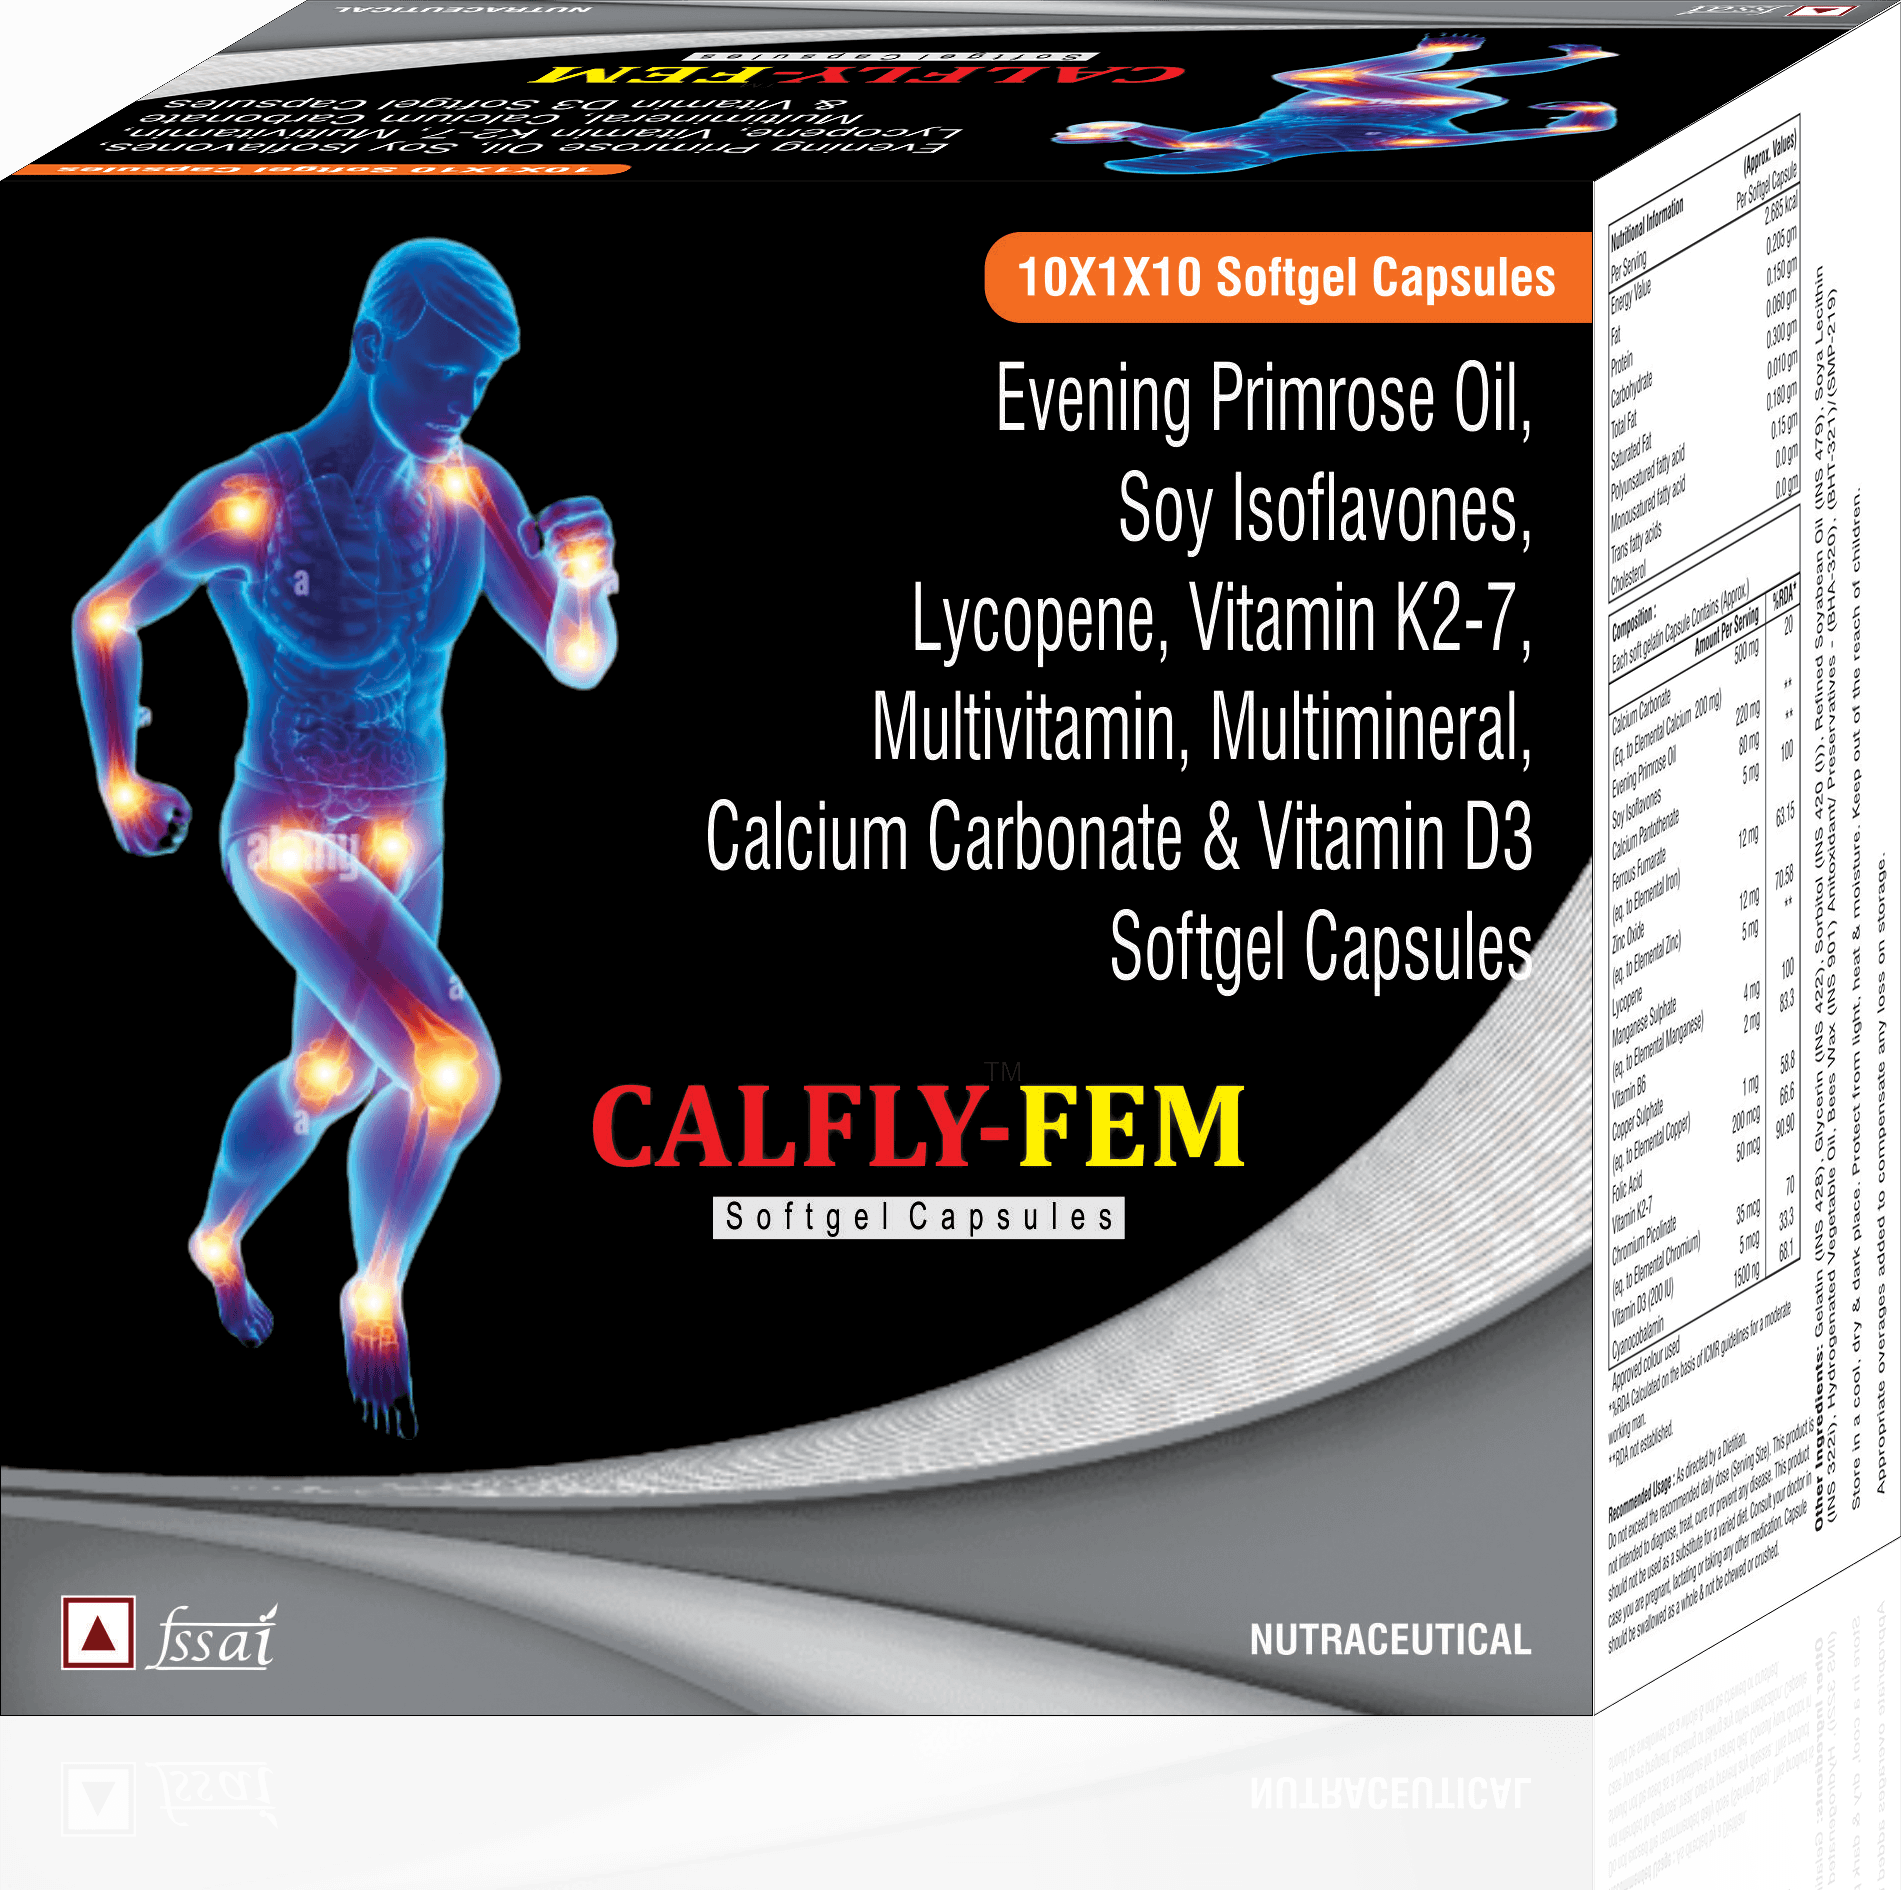 Calfly - FEM